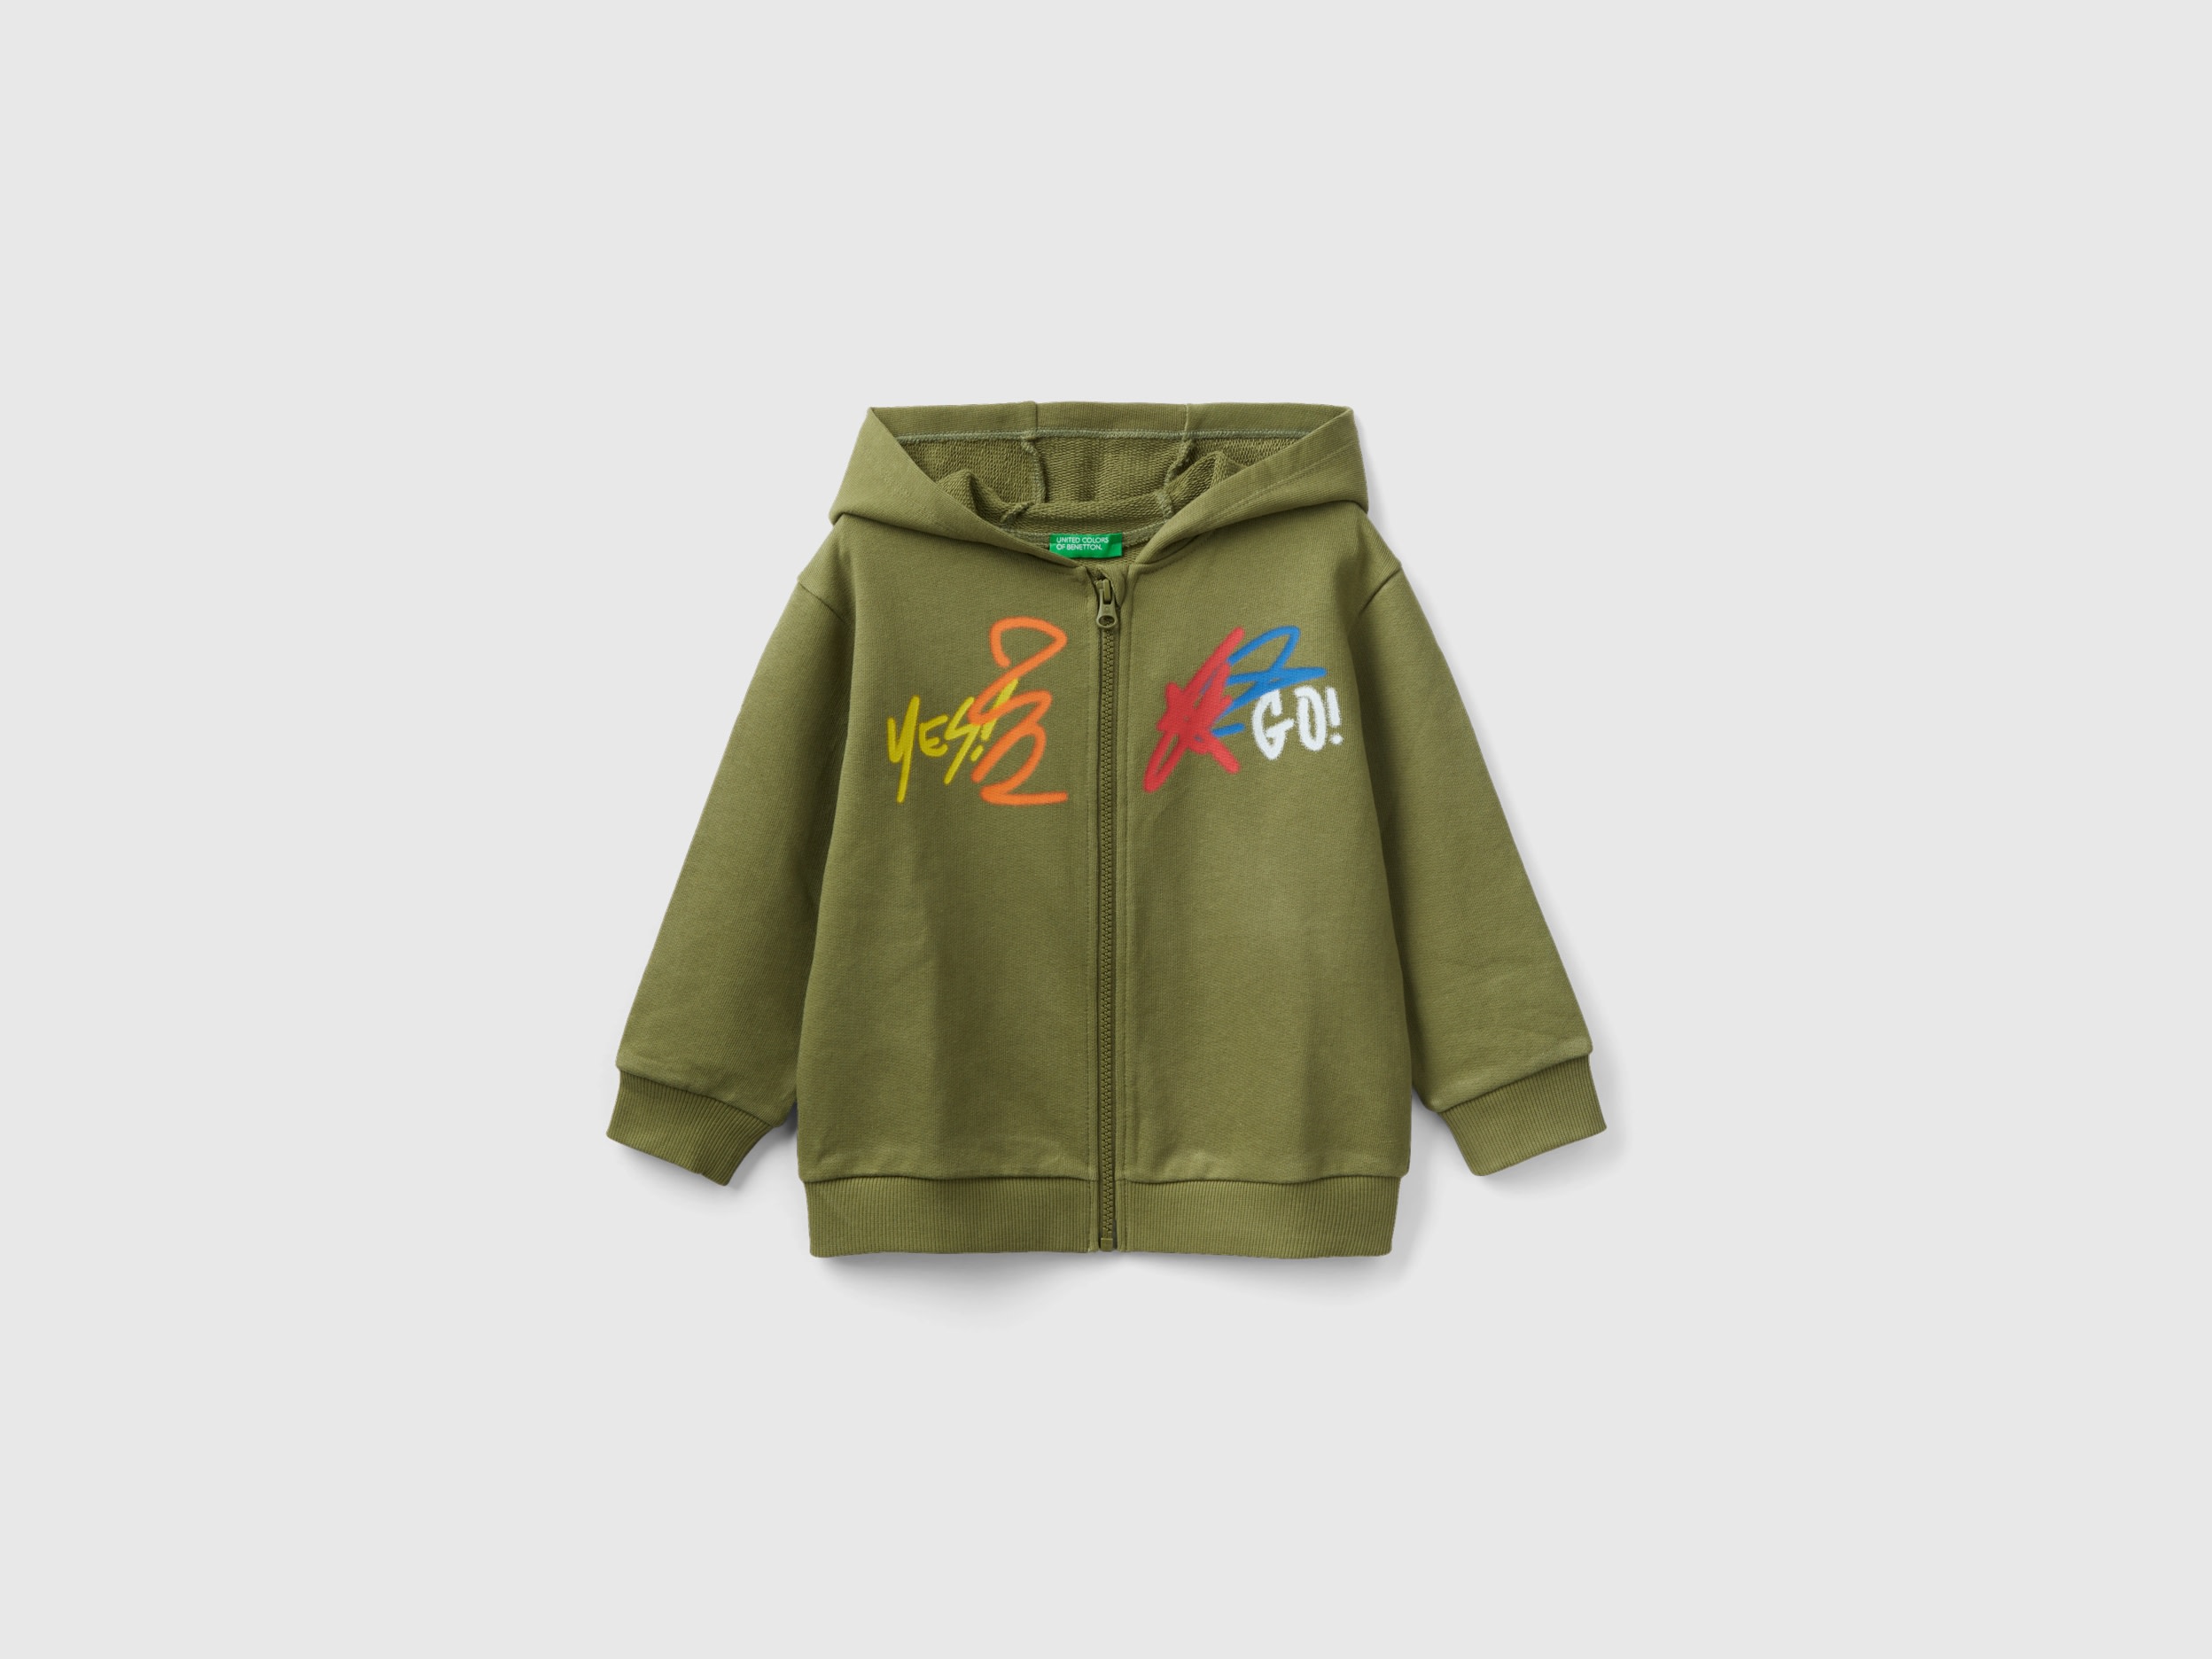 Benetton, Oversize Sweatshirt With Hood, size 18-24, Military Green, Kids